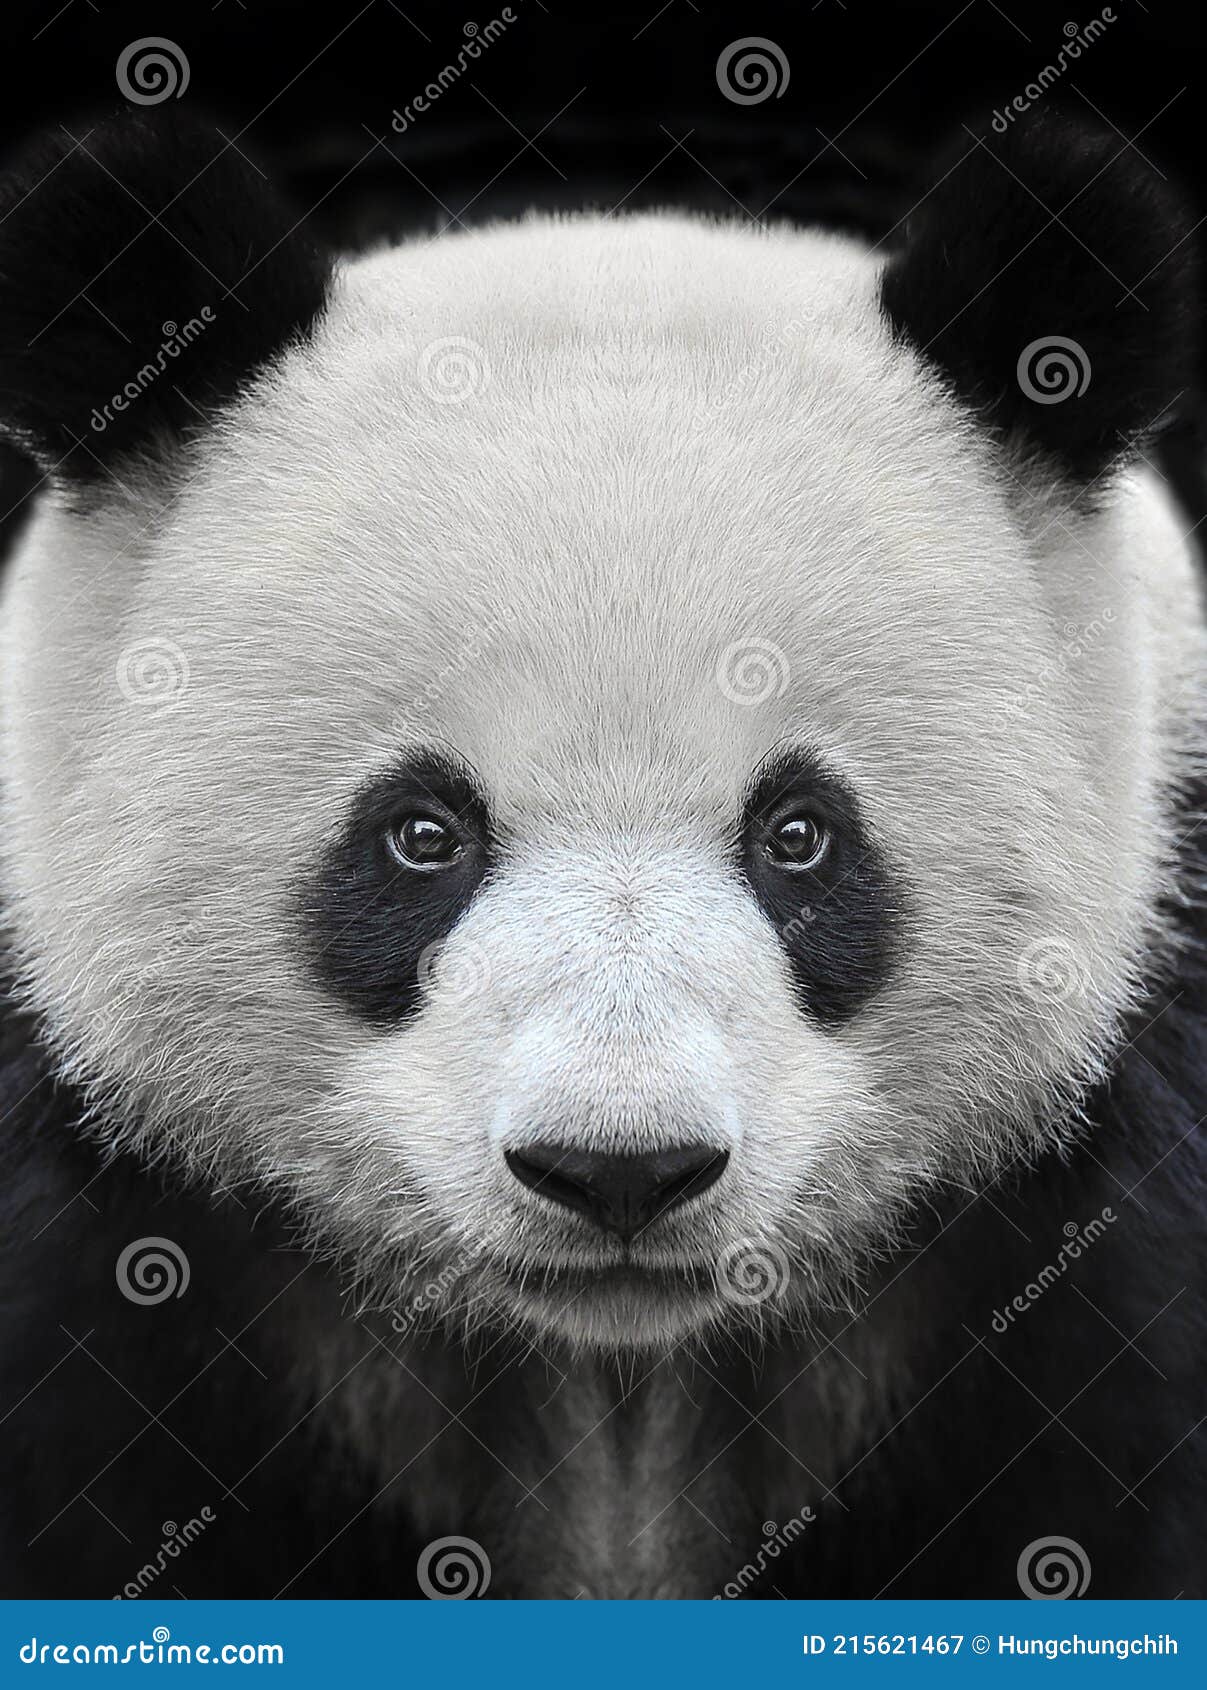 Giant Panda Bear Isolated Against Black Background Stock Image - Image of  china, close: 215621467